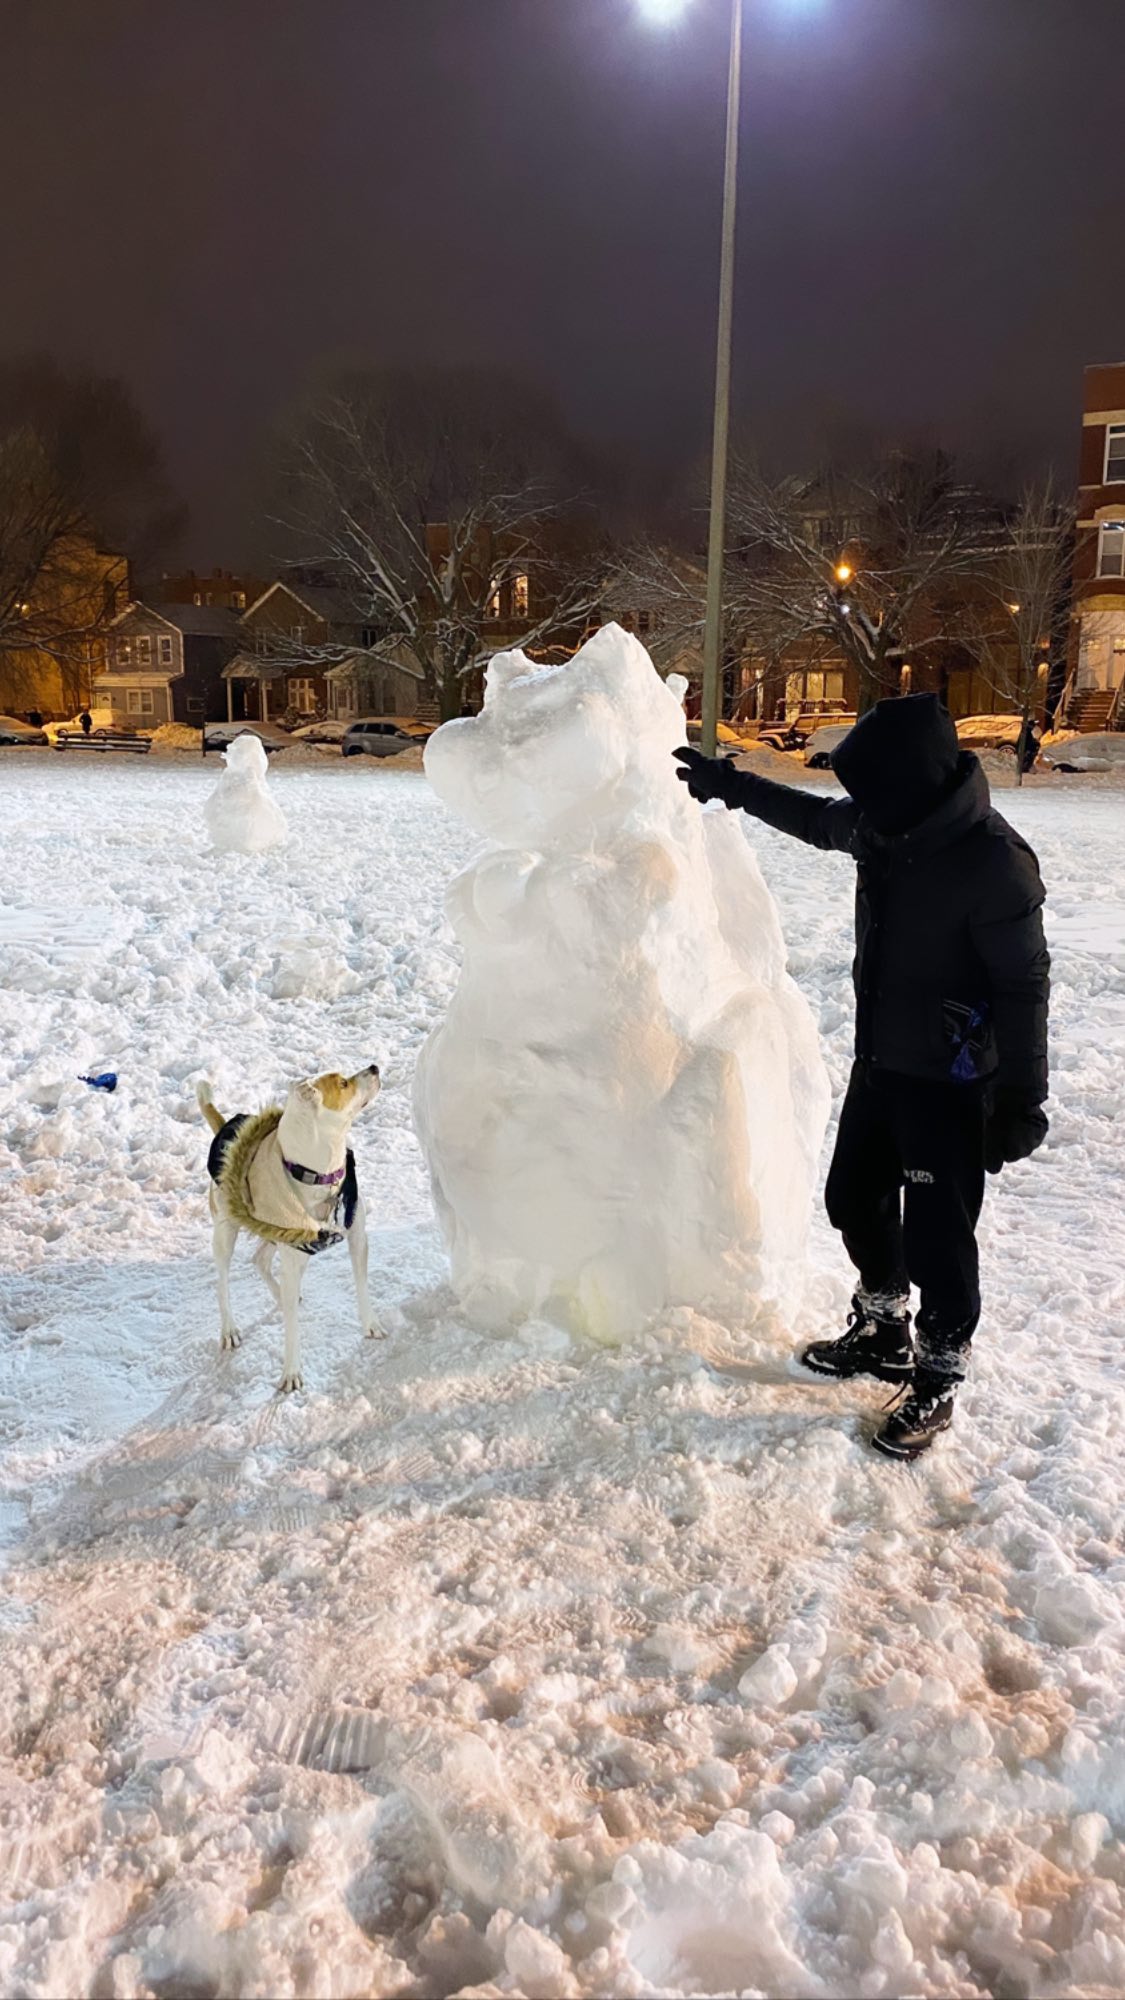 Fotos n°3 : Sydney Sweeney Construye un ejrcito de muecos de nieve!